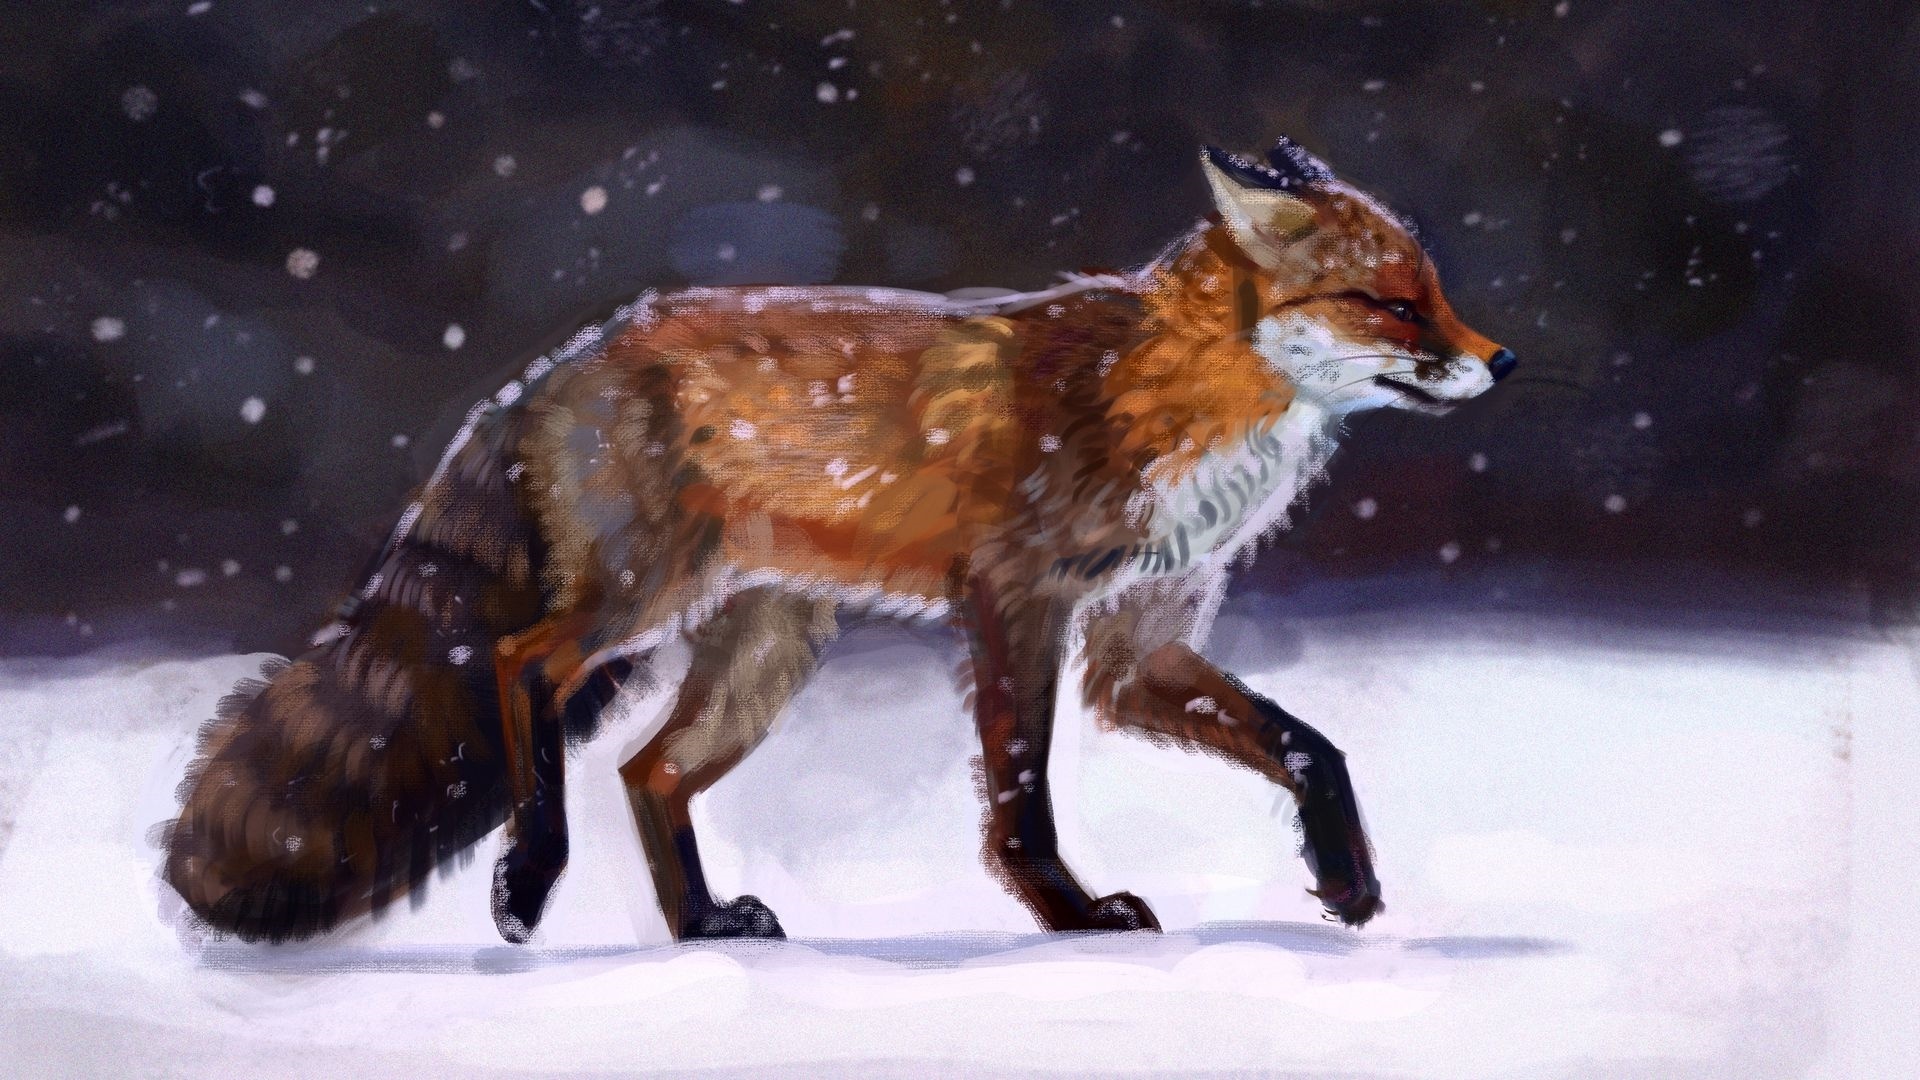 Fox Art Background